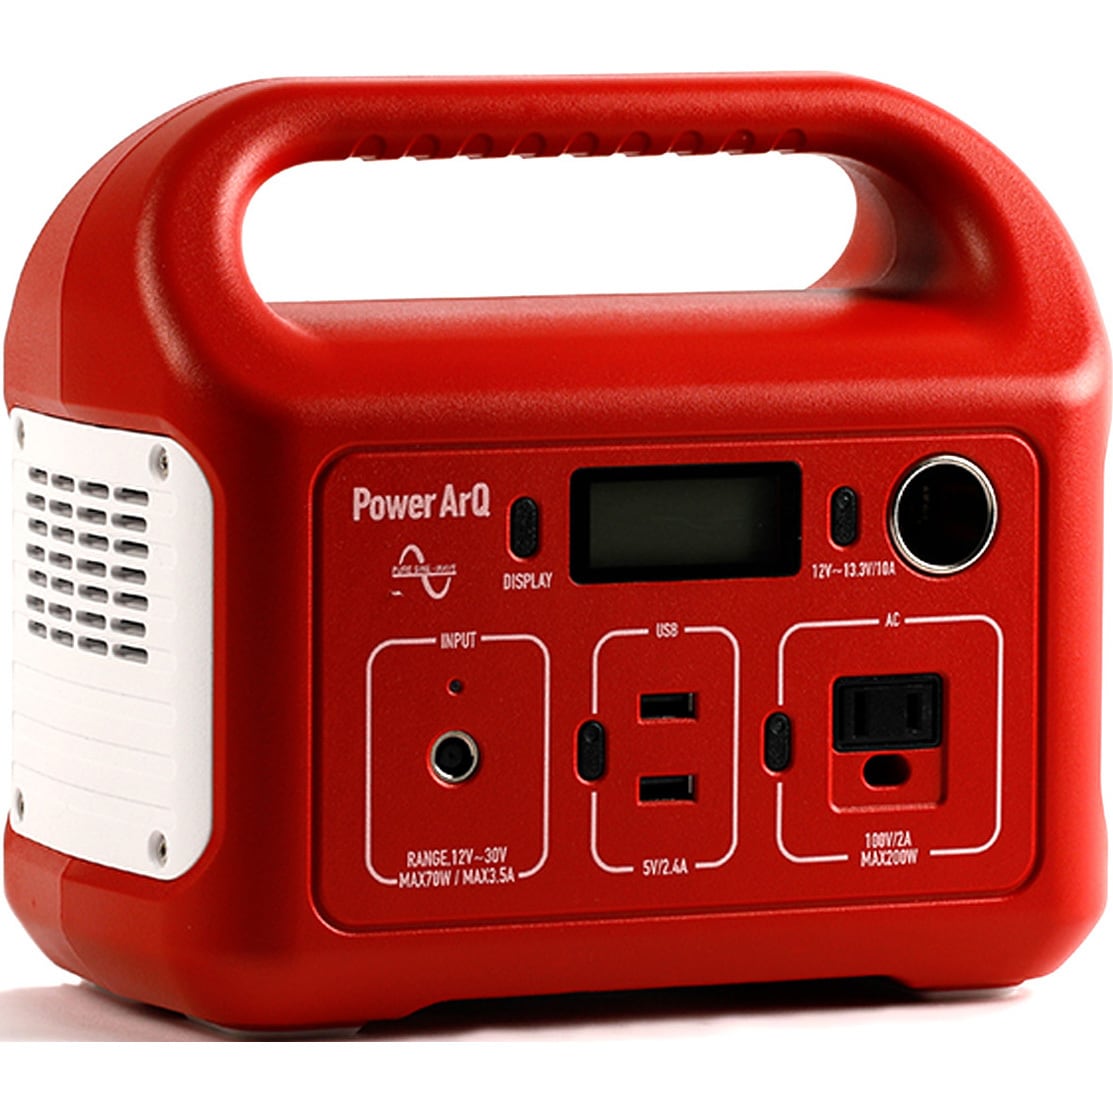 HTE032311A-RD ポータブル電源 PowerArQ mini 346Wh 蓄電池 1個